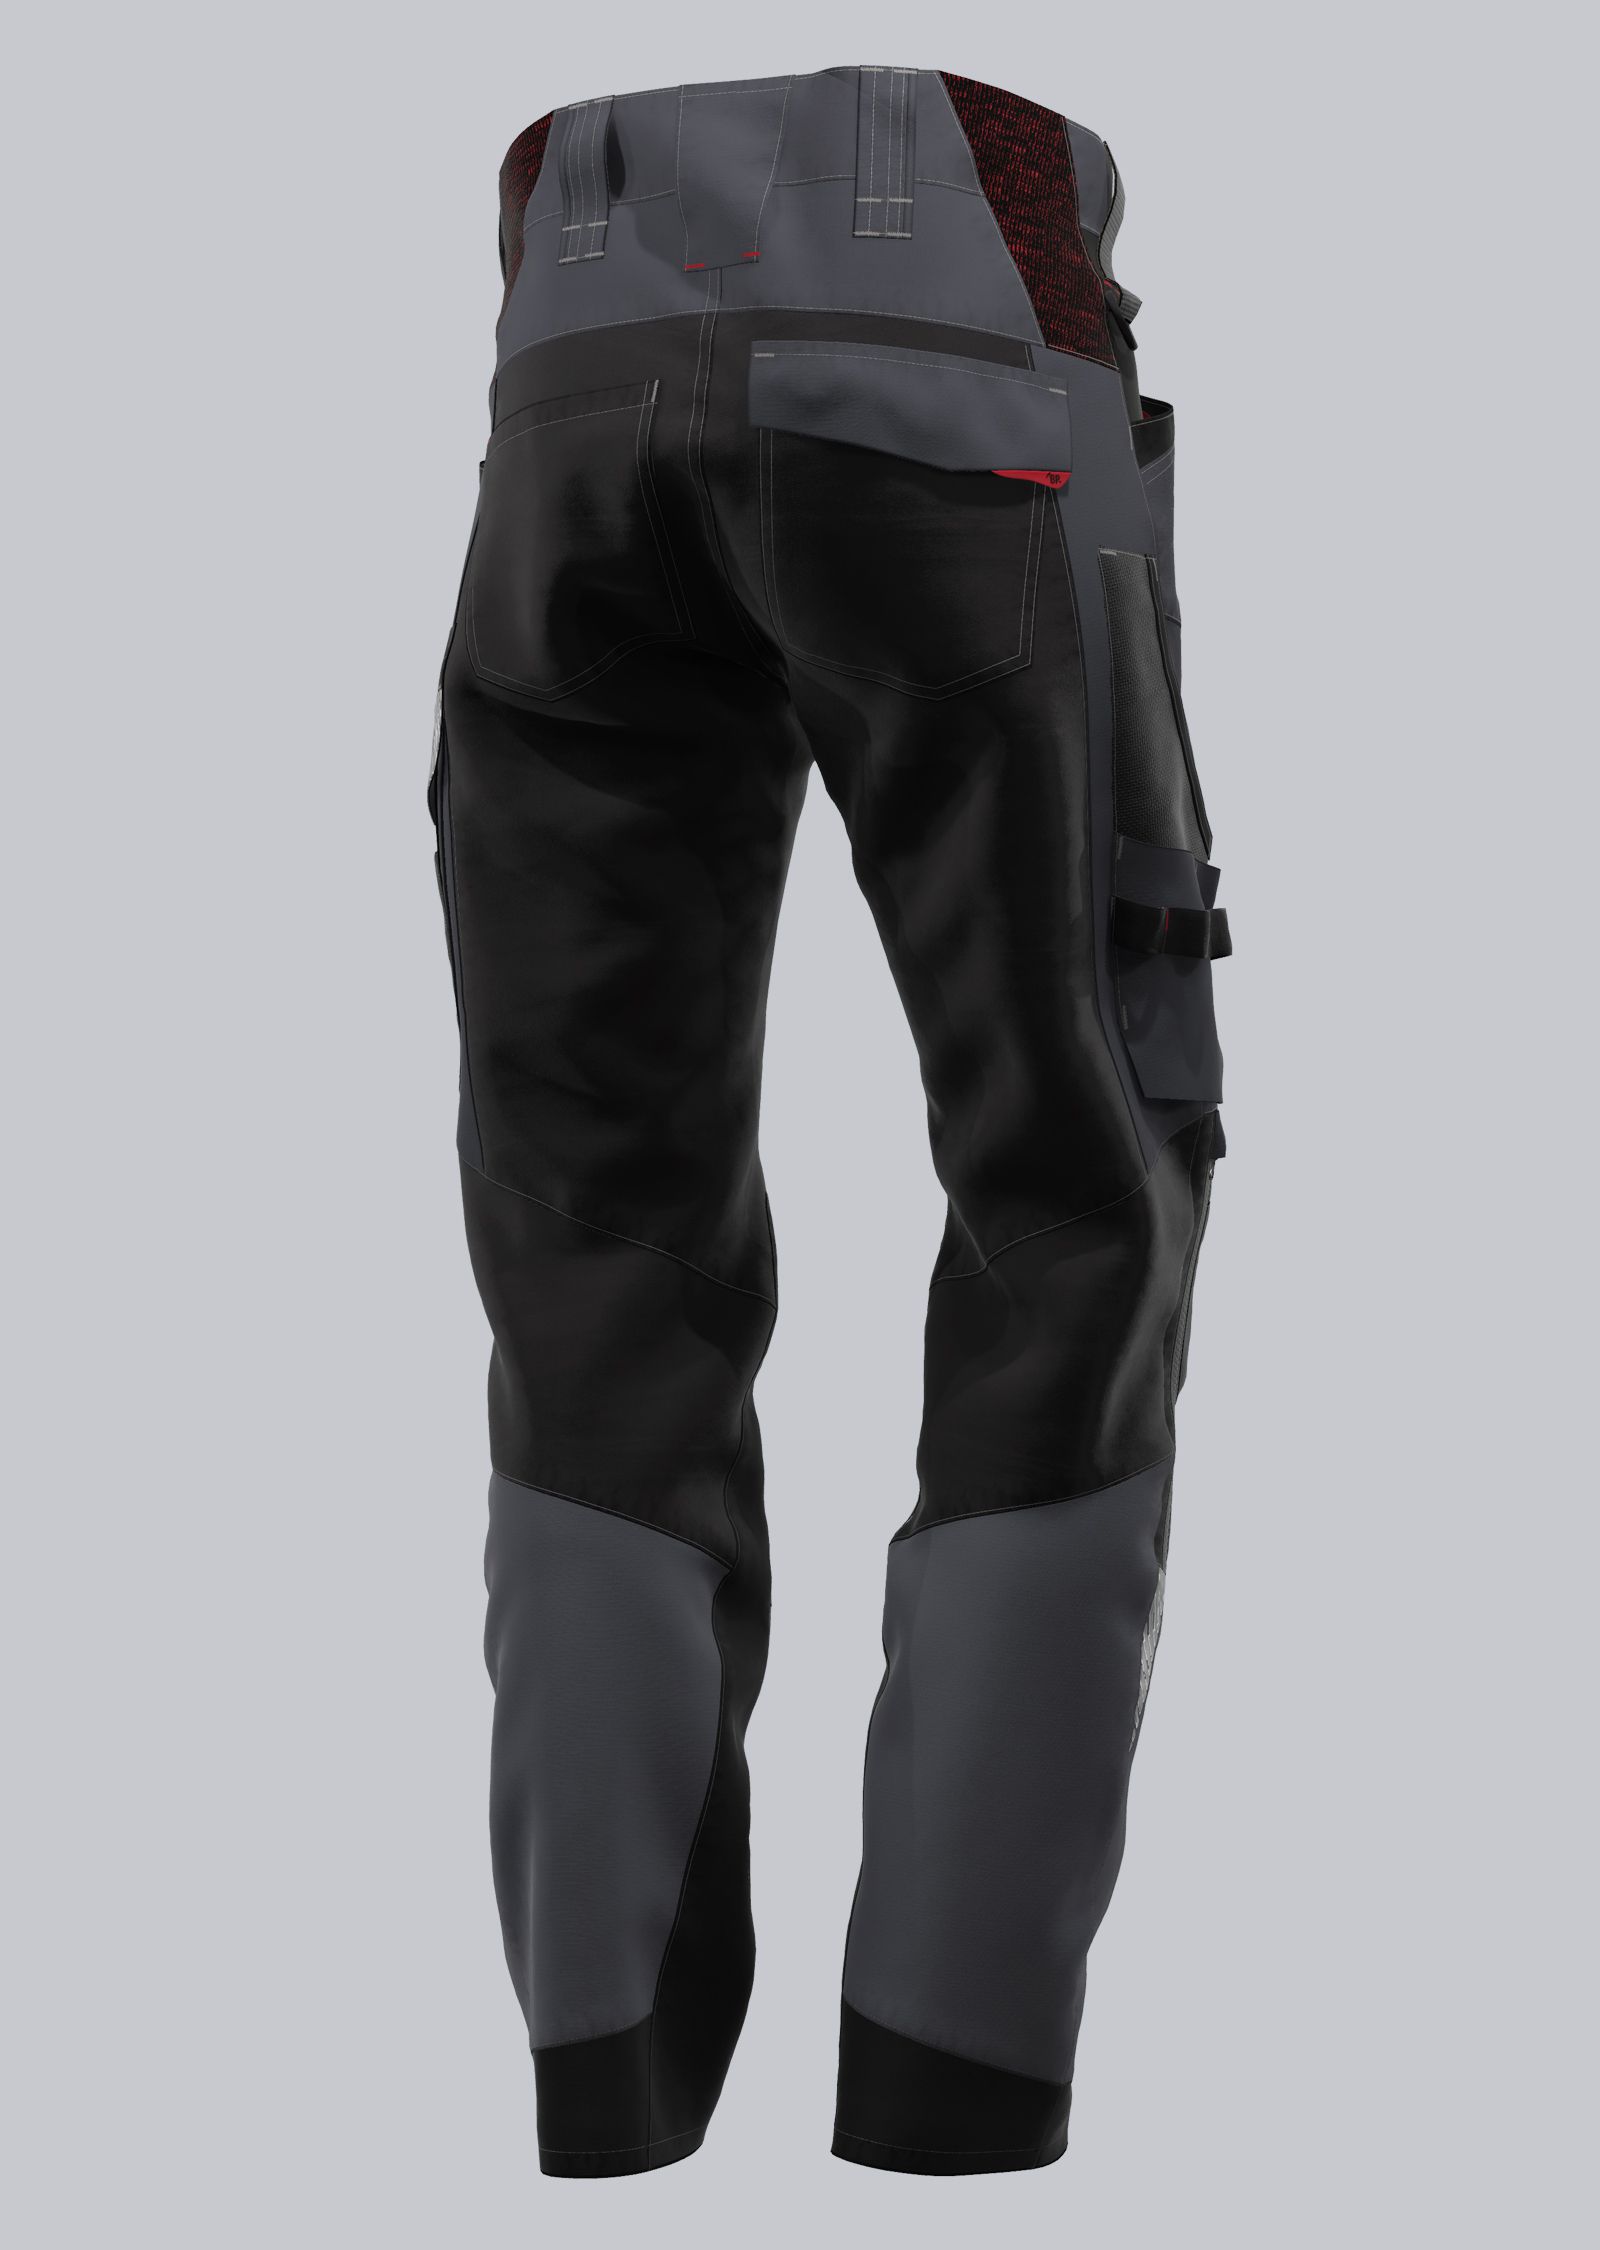 BP® Leichte Hybrid-Arbeitshose mit Kniepolstertaschen, anthrazit/schwarz |  Bundhosen | Hosen | Bekleidung |